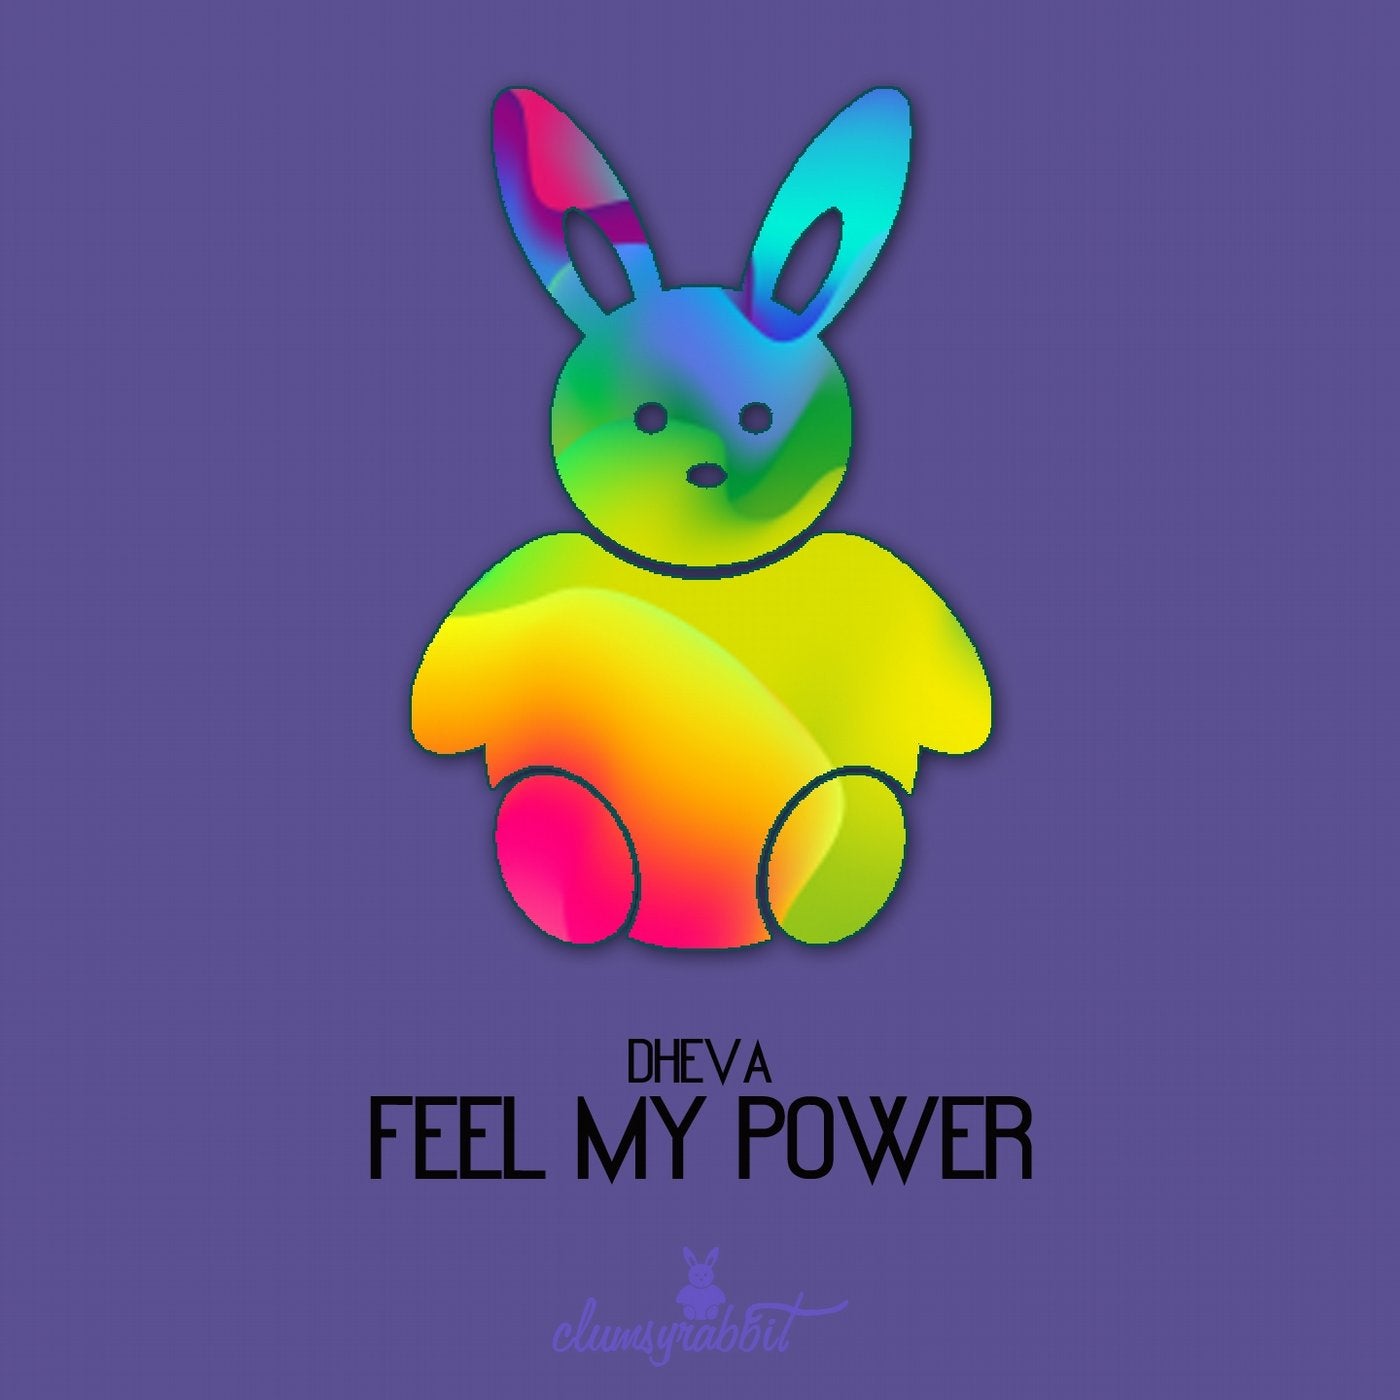 Feel My Power